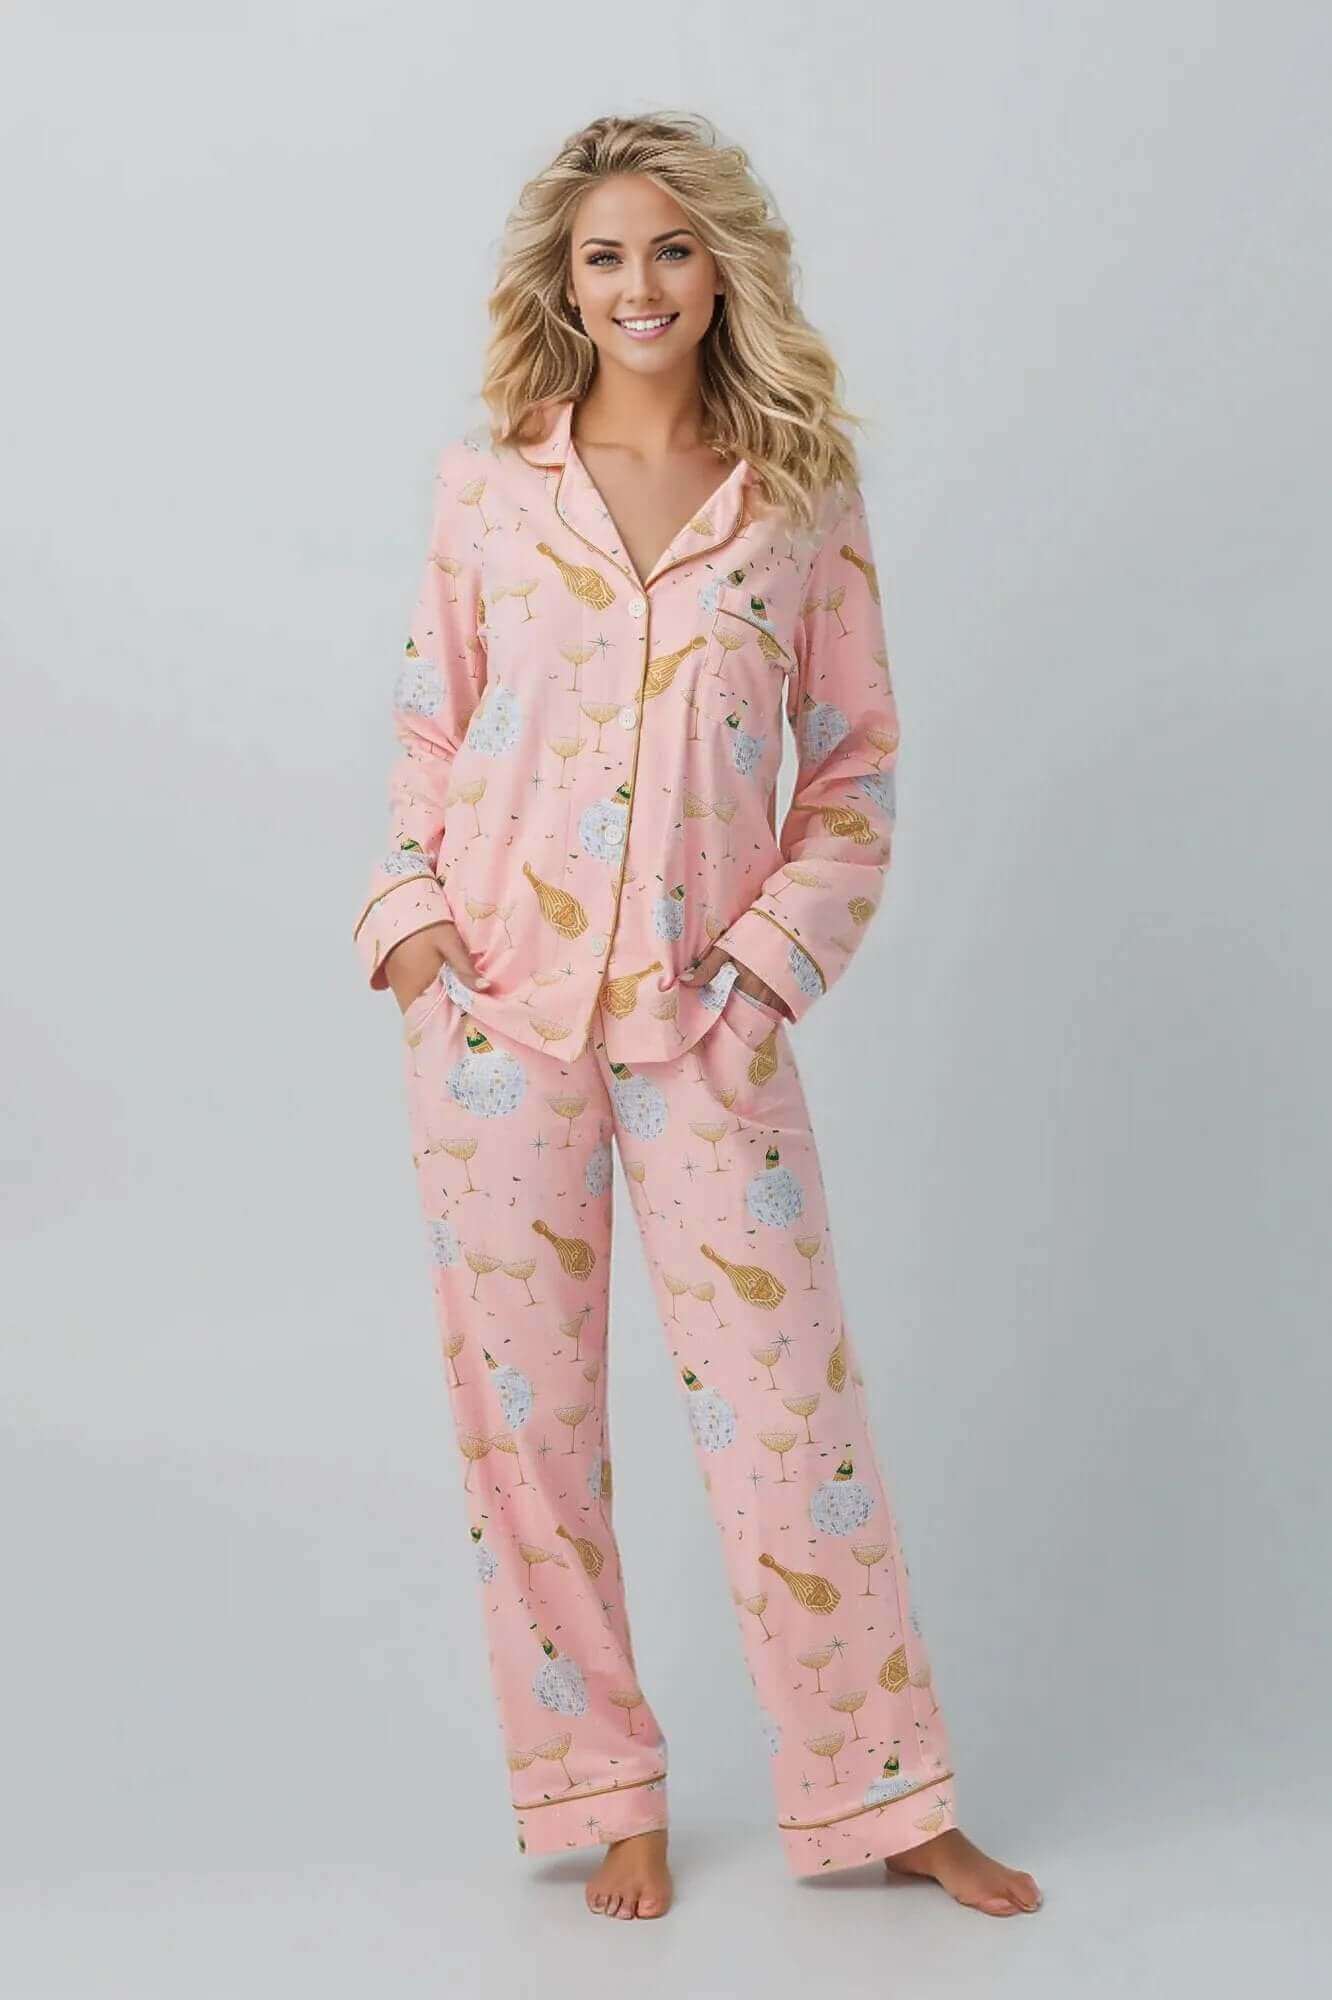 Solstice Shearling Rollneck Pajama Set  Pajamas women, Womens pyjama sets,  Pajama set